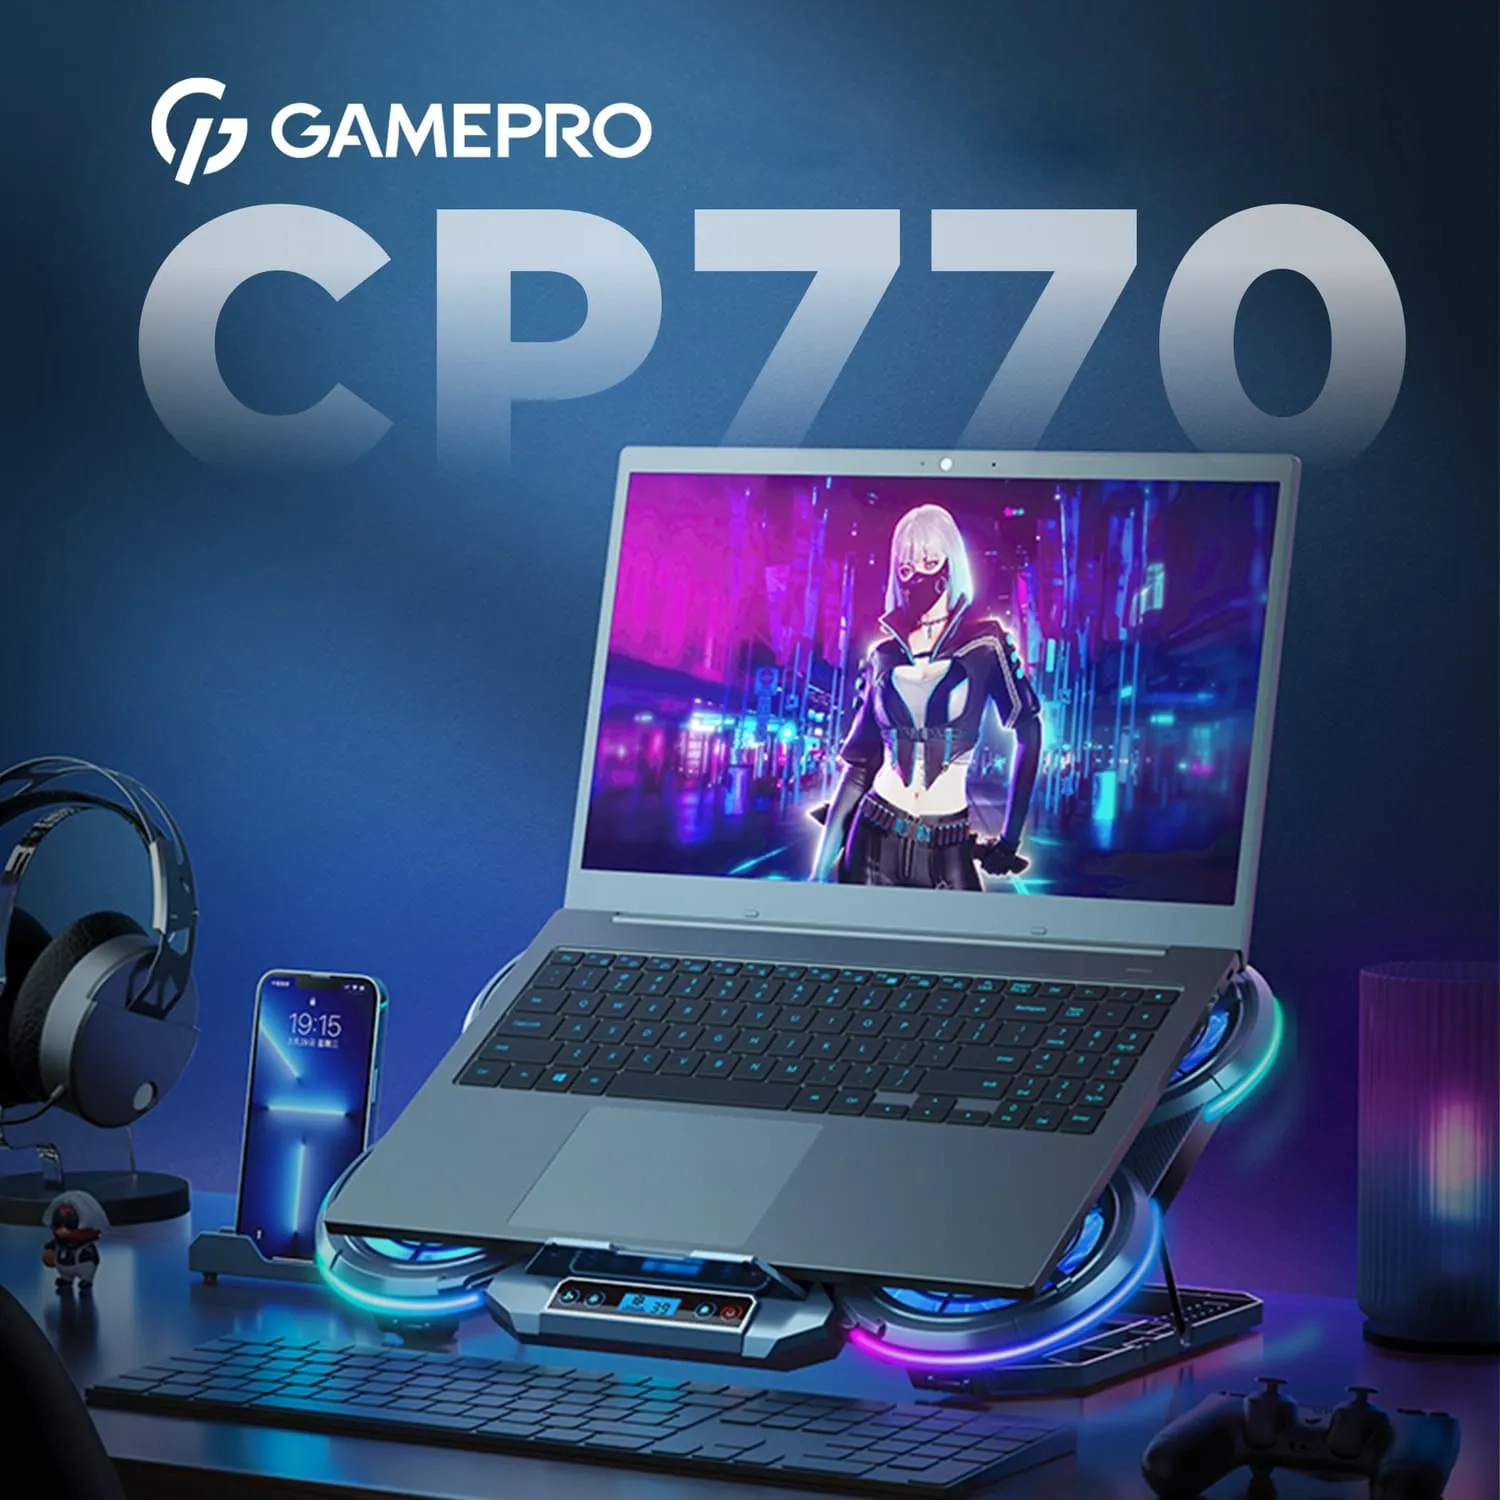 GamePro CP770